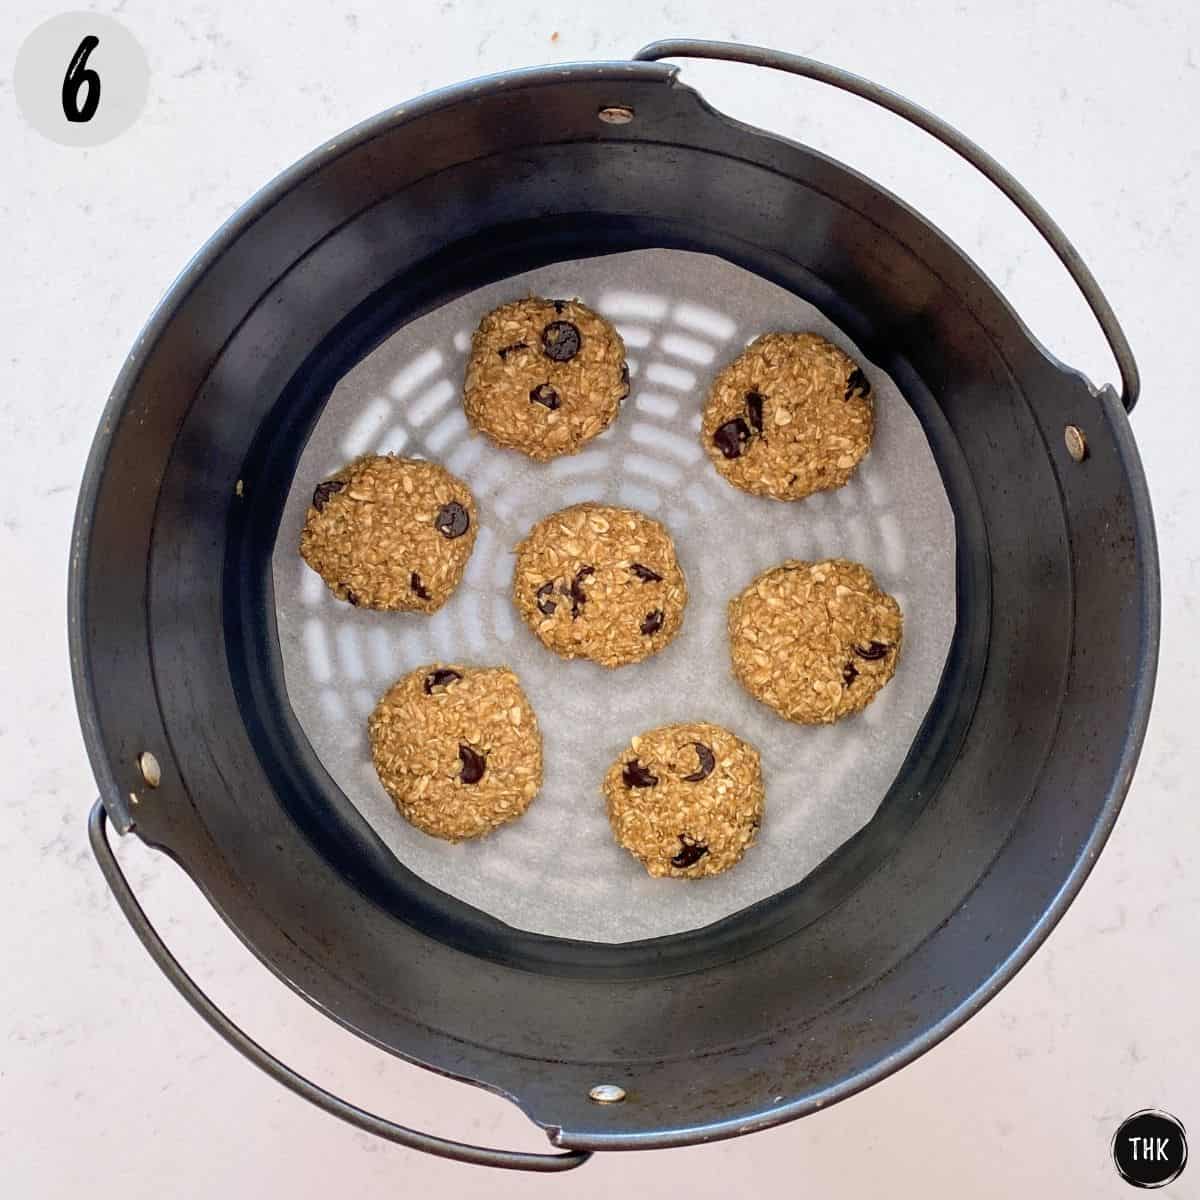 Cookies inside basket of air fryer.